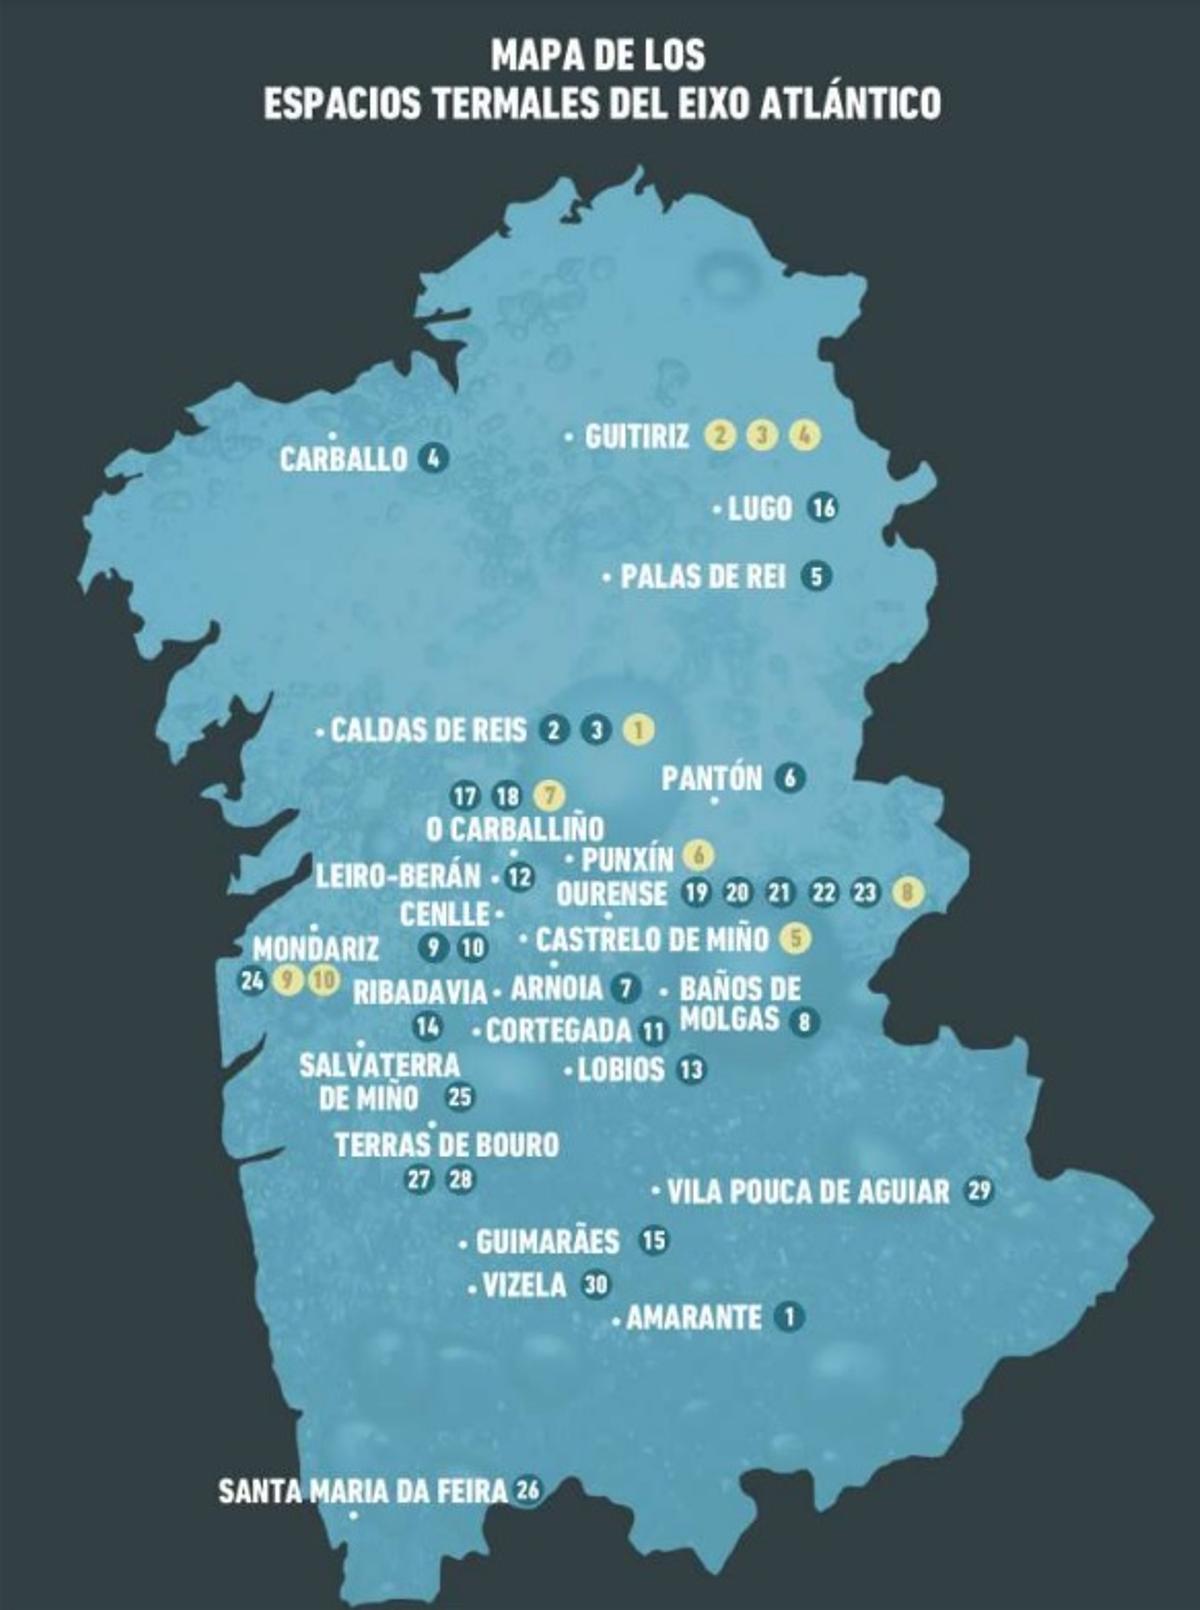 Mapa de los espacios termales del Eixo Atlántico Galicia - Norte de Portugal.